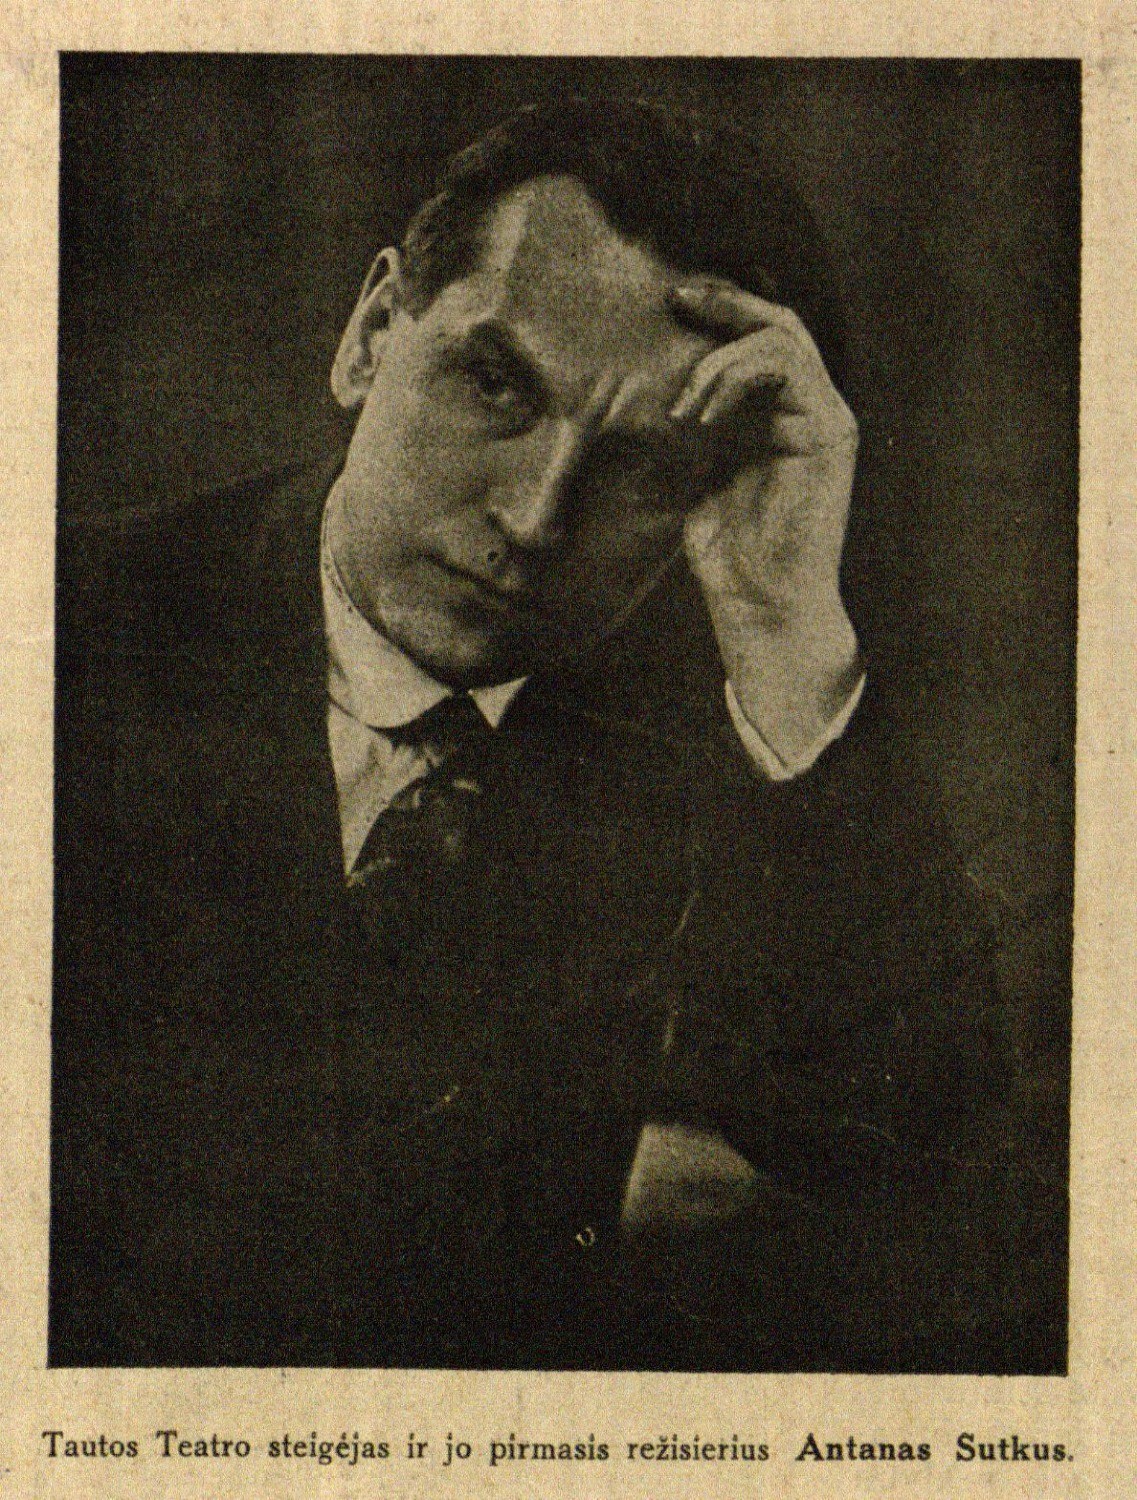 Tautos Teatro steigėjas ir jo pirmasis režisierius Antanas Sutkus // Naujas žodis. – 1929, Nr. 10/11, p. 9.